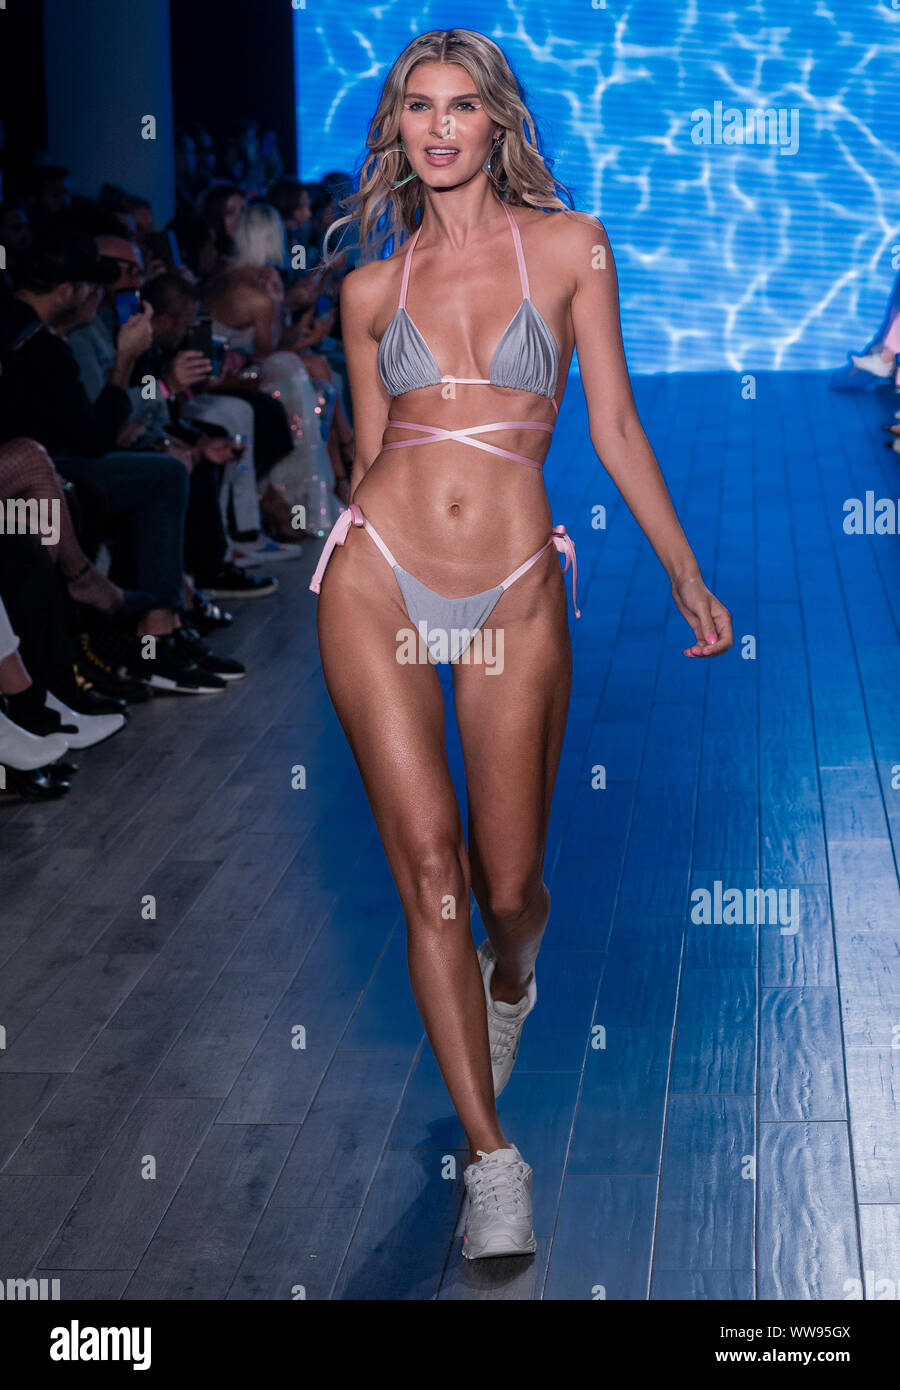 New York, NY - Septiembre 11, 2019: modelo camina pista para Mery Playa bañador colección por Mery Racauchi y Sofía Resing durante 360 estilo show en el Fotografía de stock - Alamy